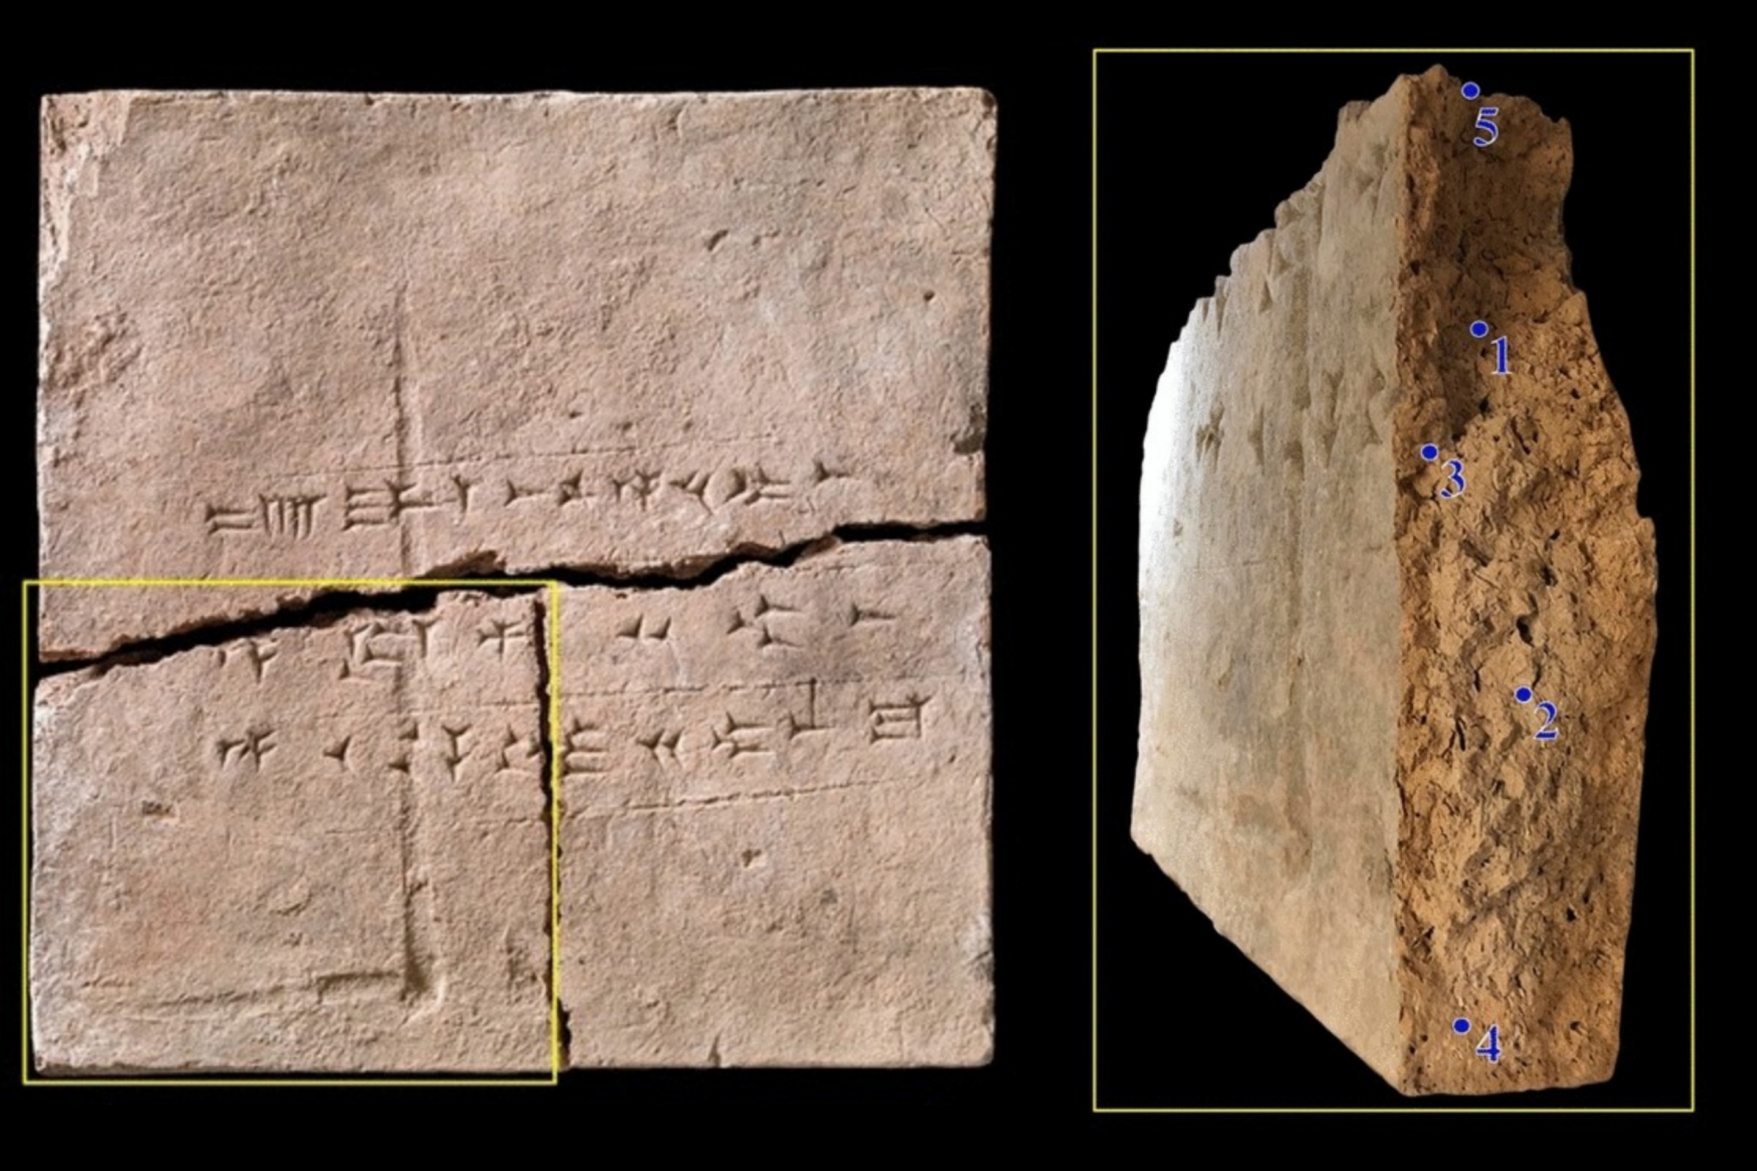 La brique d'argile dont proviennent les échantillons. Photos de la brique en terre cuite du Musée national du Danemark (numéro de musée 13854) et des cinq points d'échantillonnage à la surface de la cassure. Le carré jaune dans la partie gauche de la figure représente le morceau de brique illustré à droite.